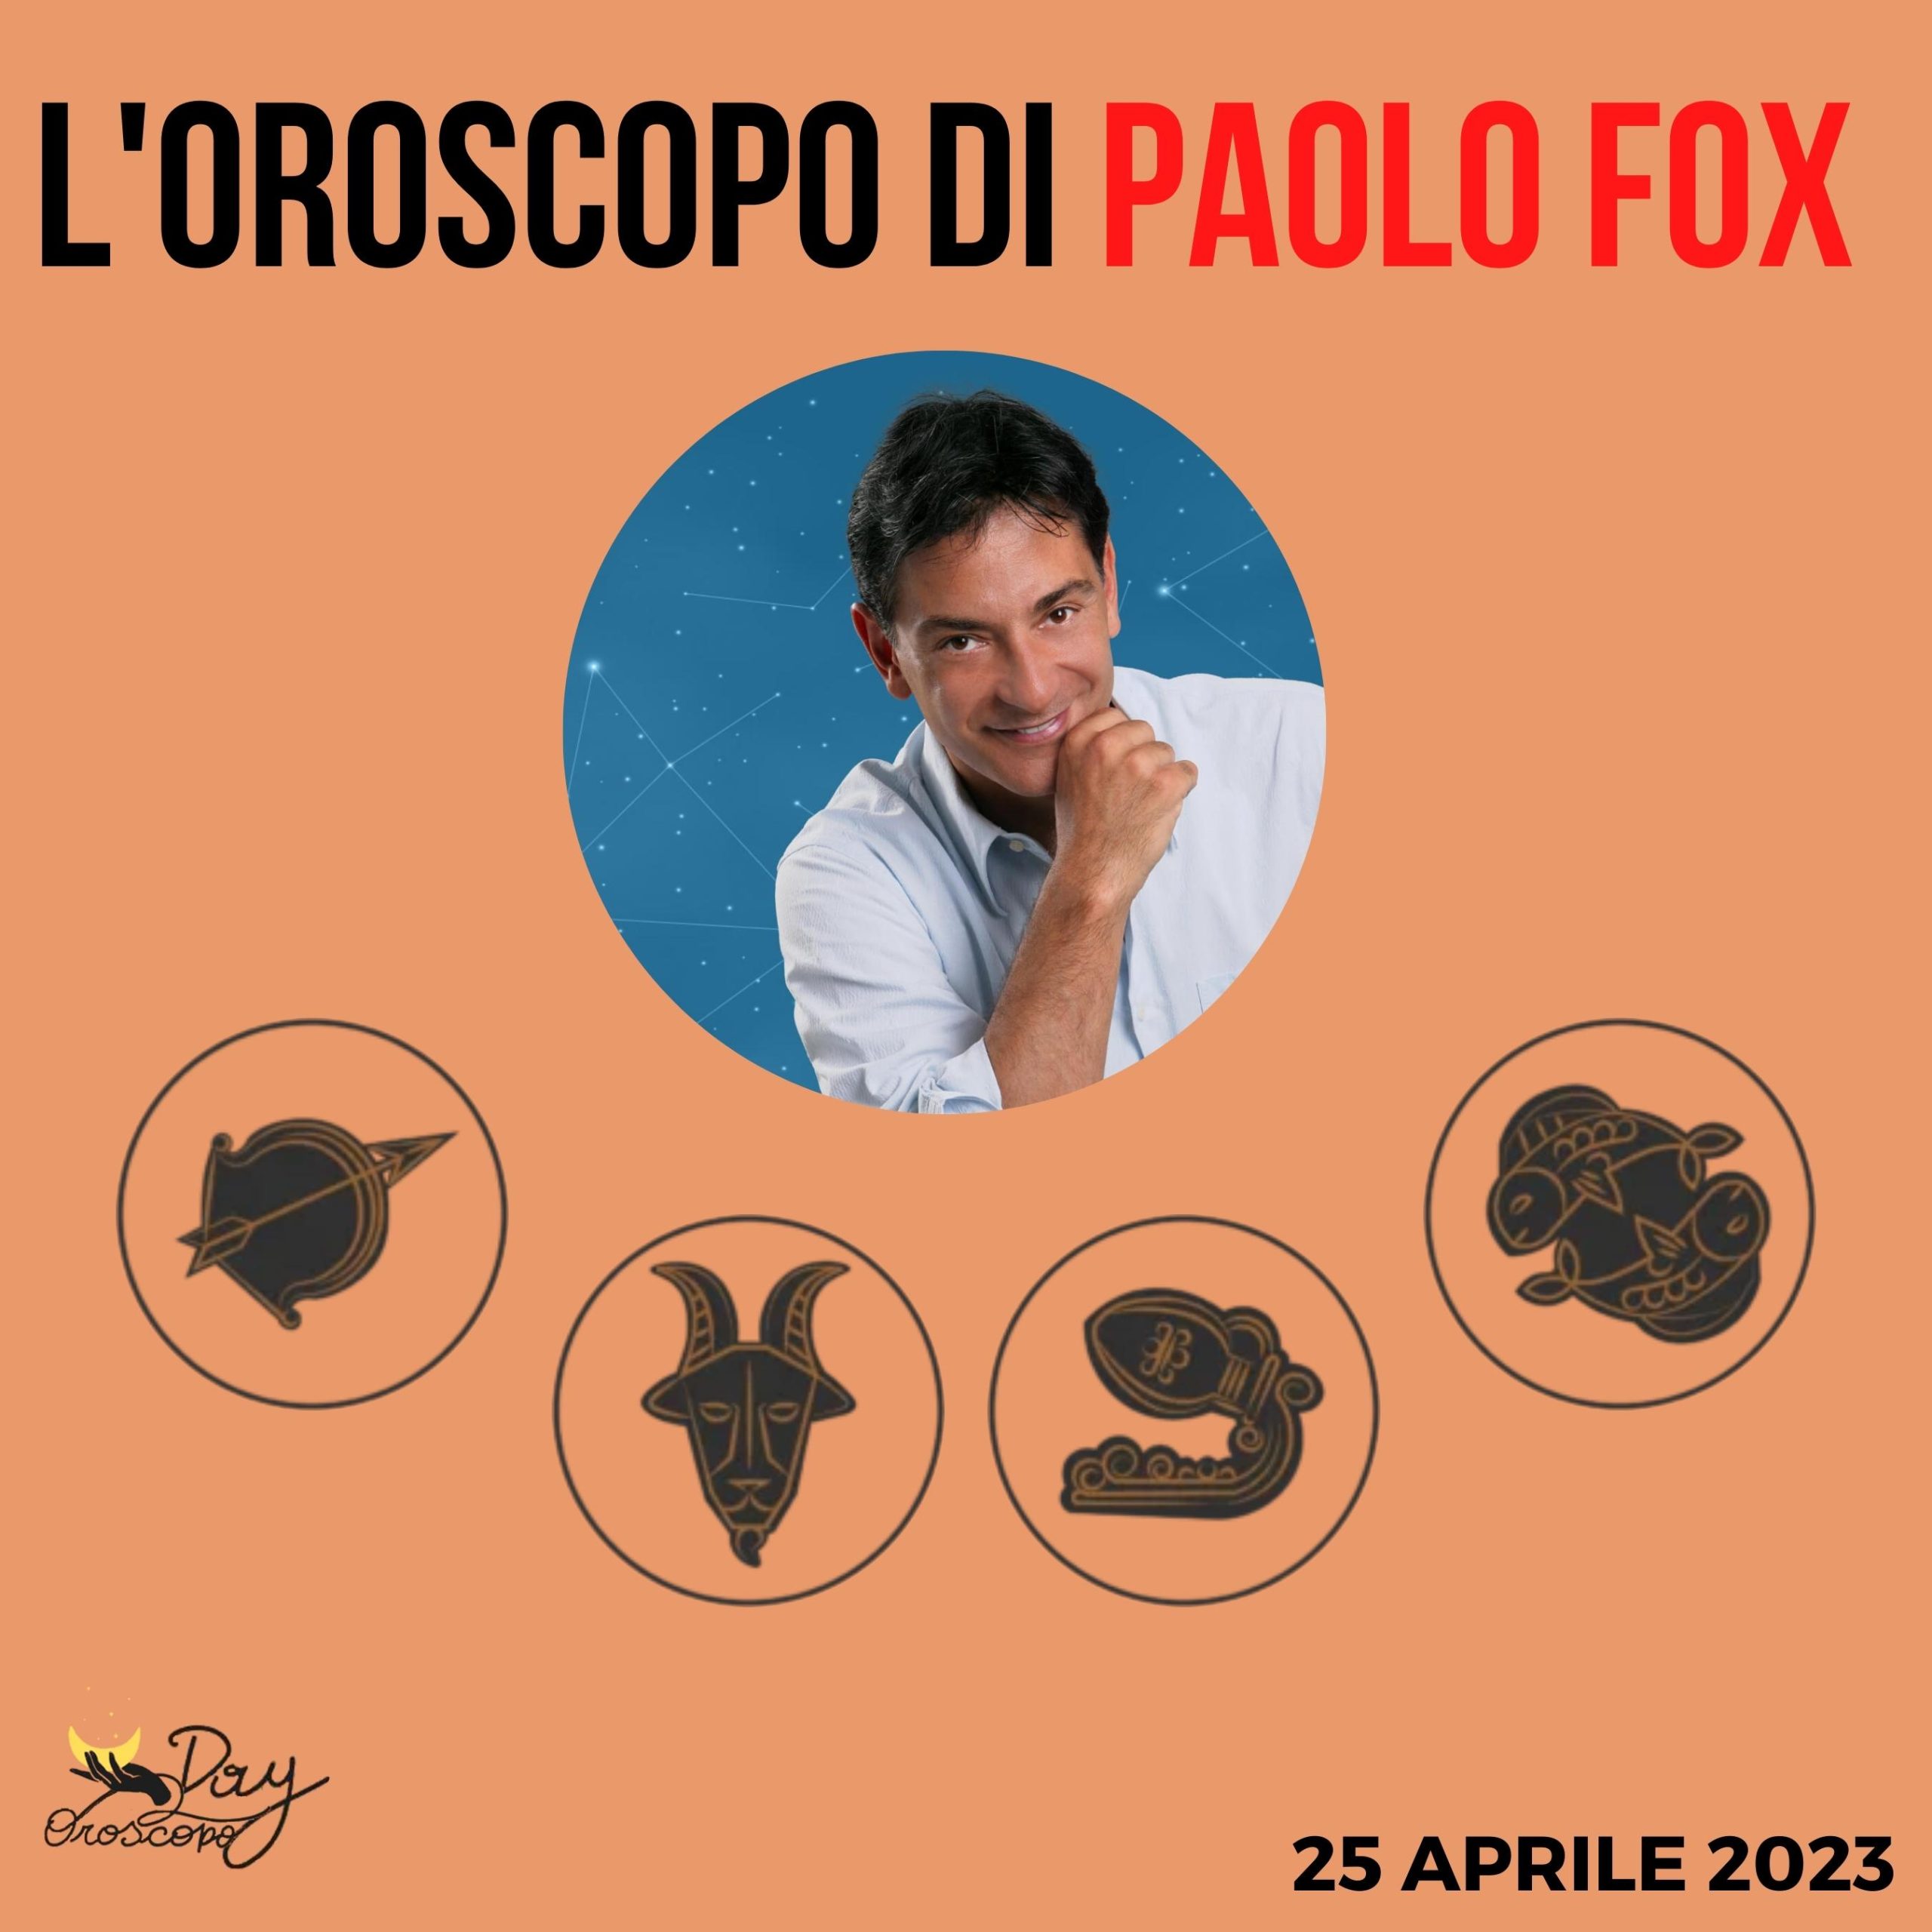 Oroscopo oggi domani Paolo Fox 25 aprile Sagittario Capricorno Acquario Pesci